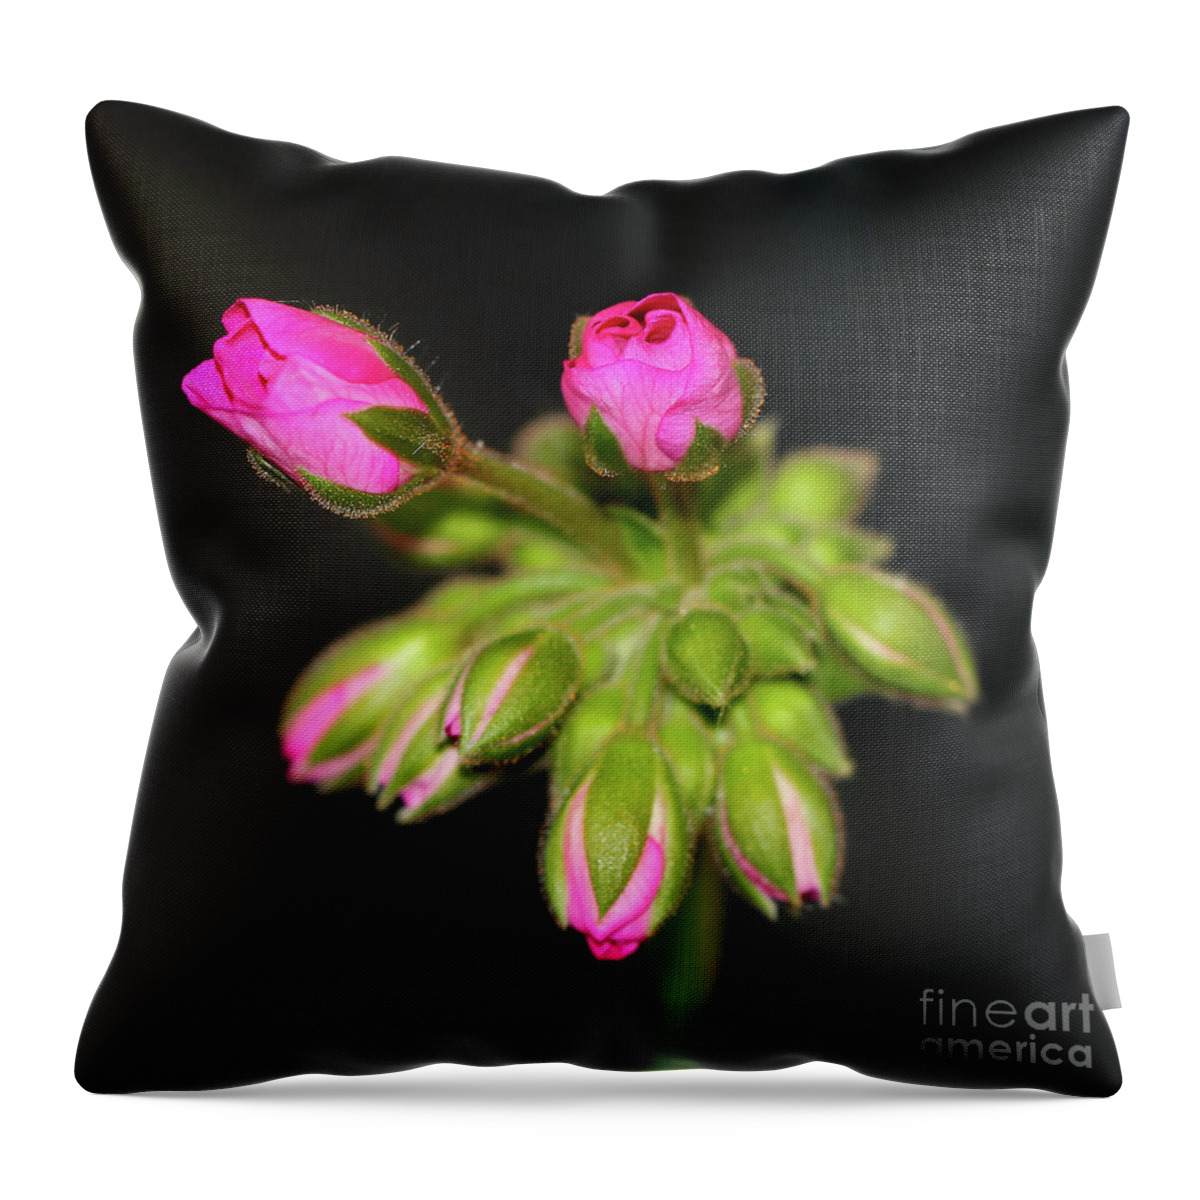 Flower Throw Pillow featuring the photograph Buds of Beauty by Karen Adams